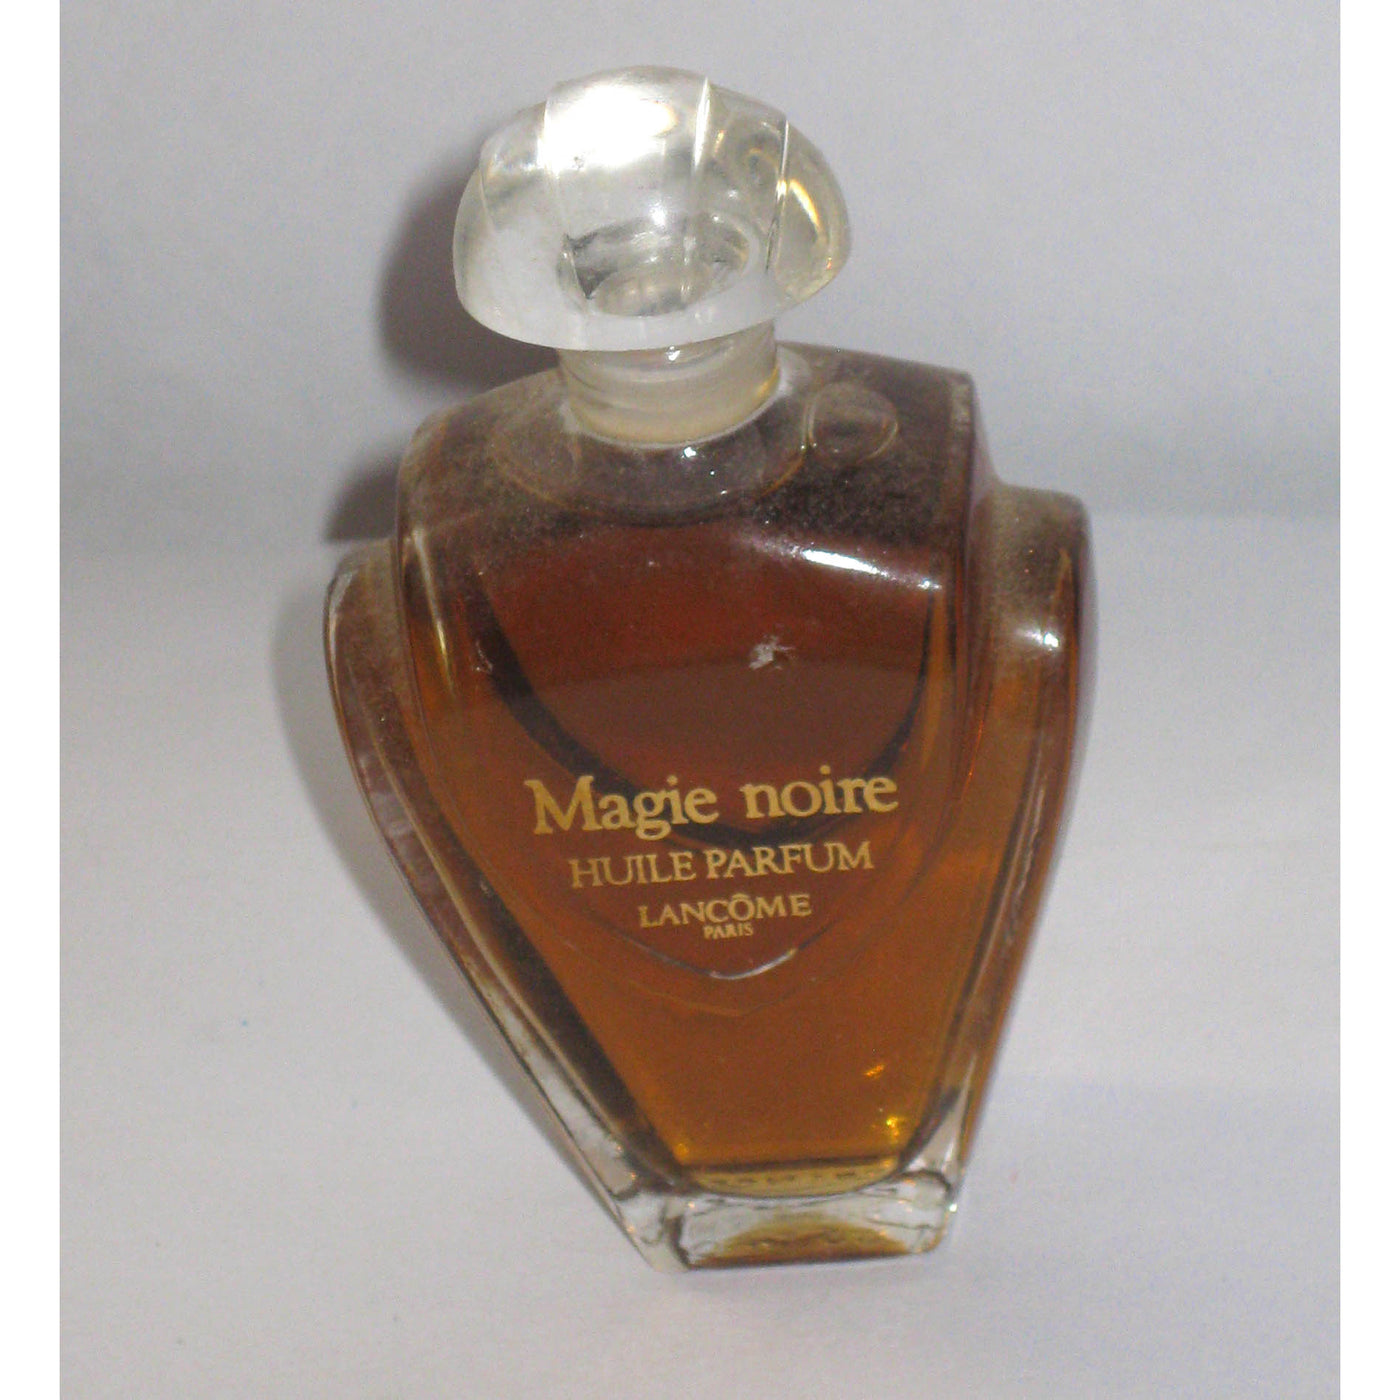 Vintage Lancome Magie Noire Huile Parfum